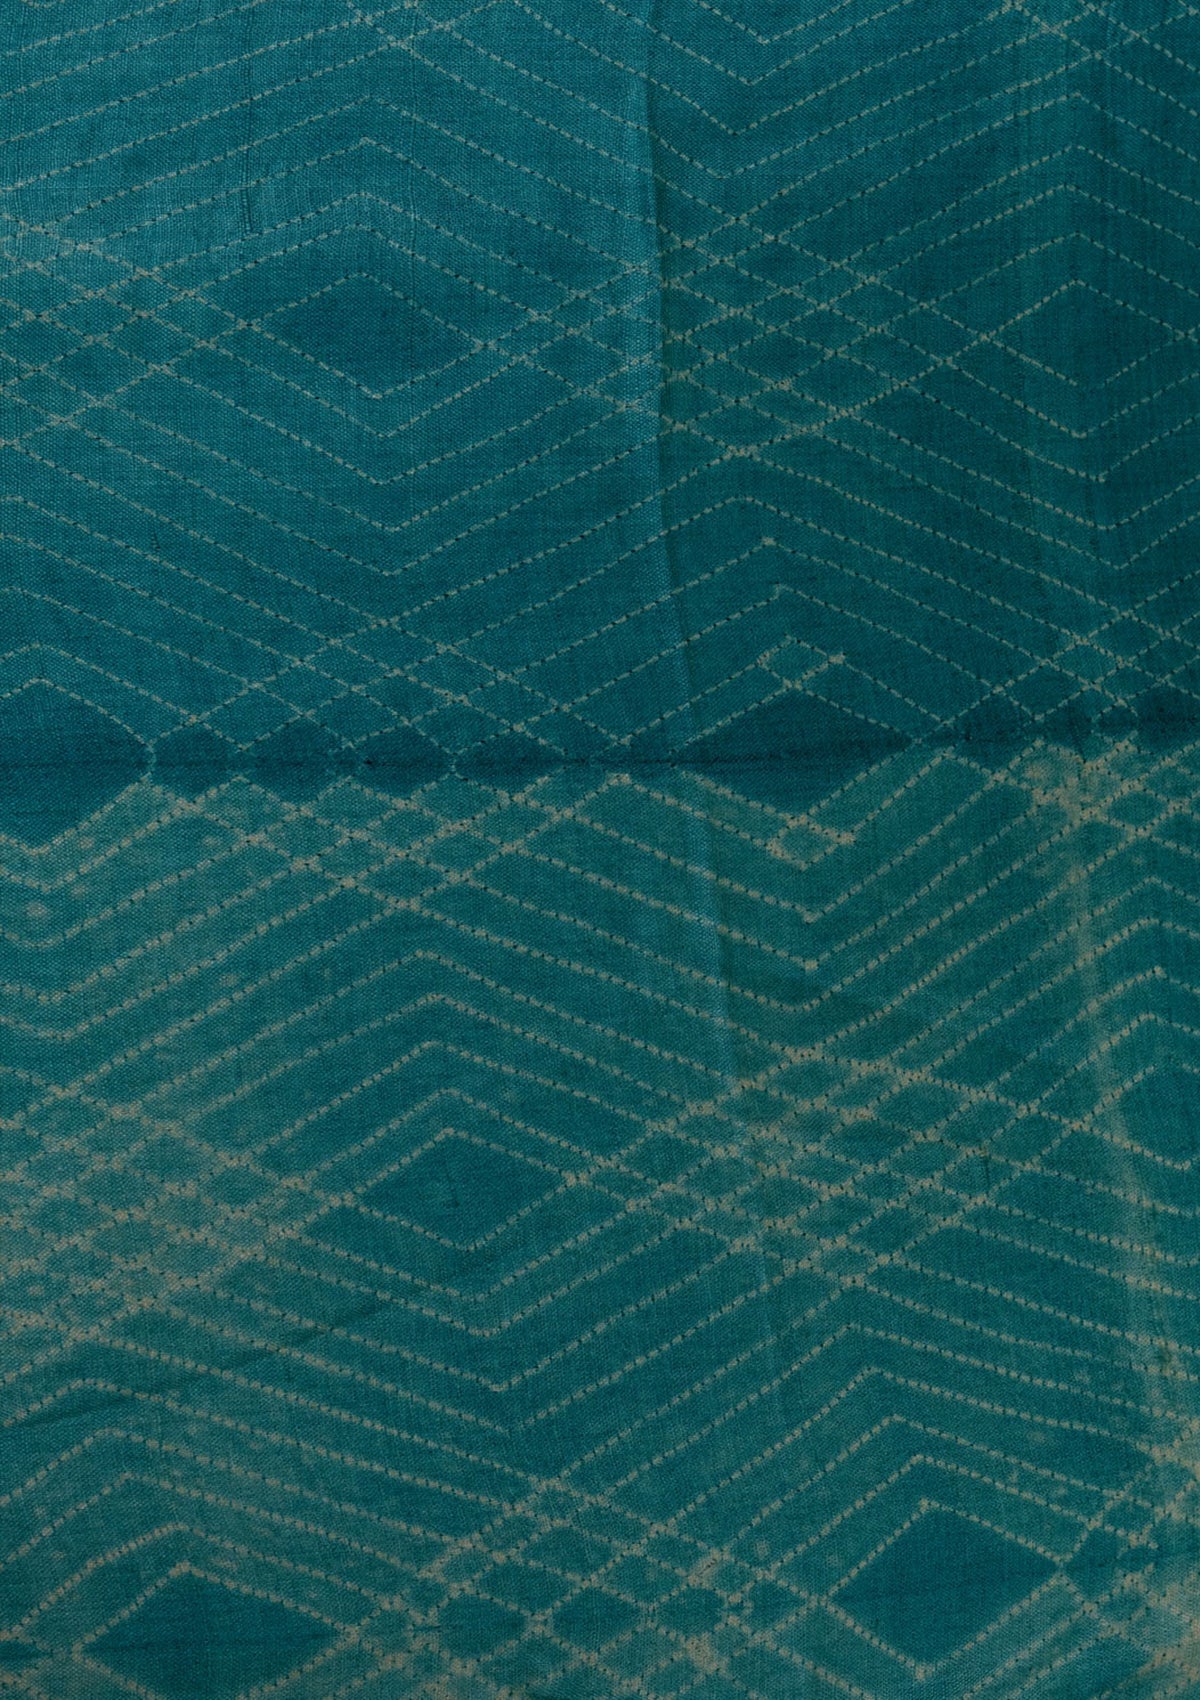 Handwoven Sea Blue Shibori Fabric